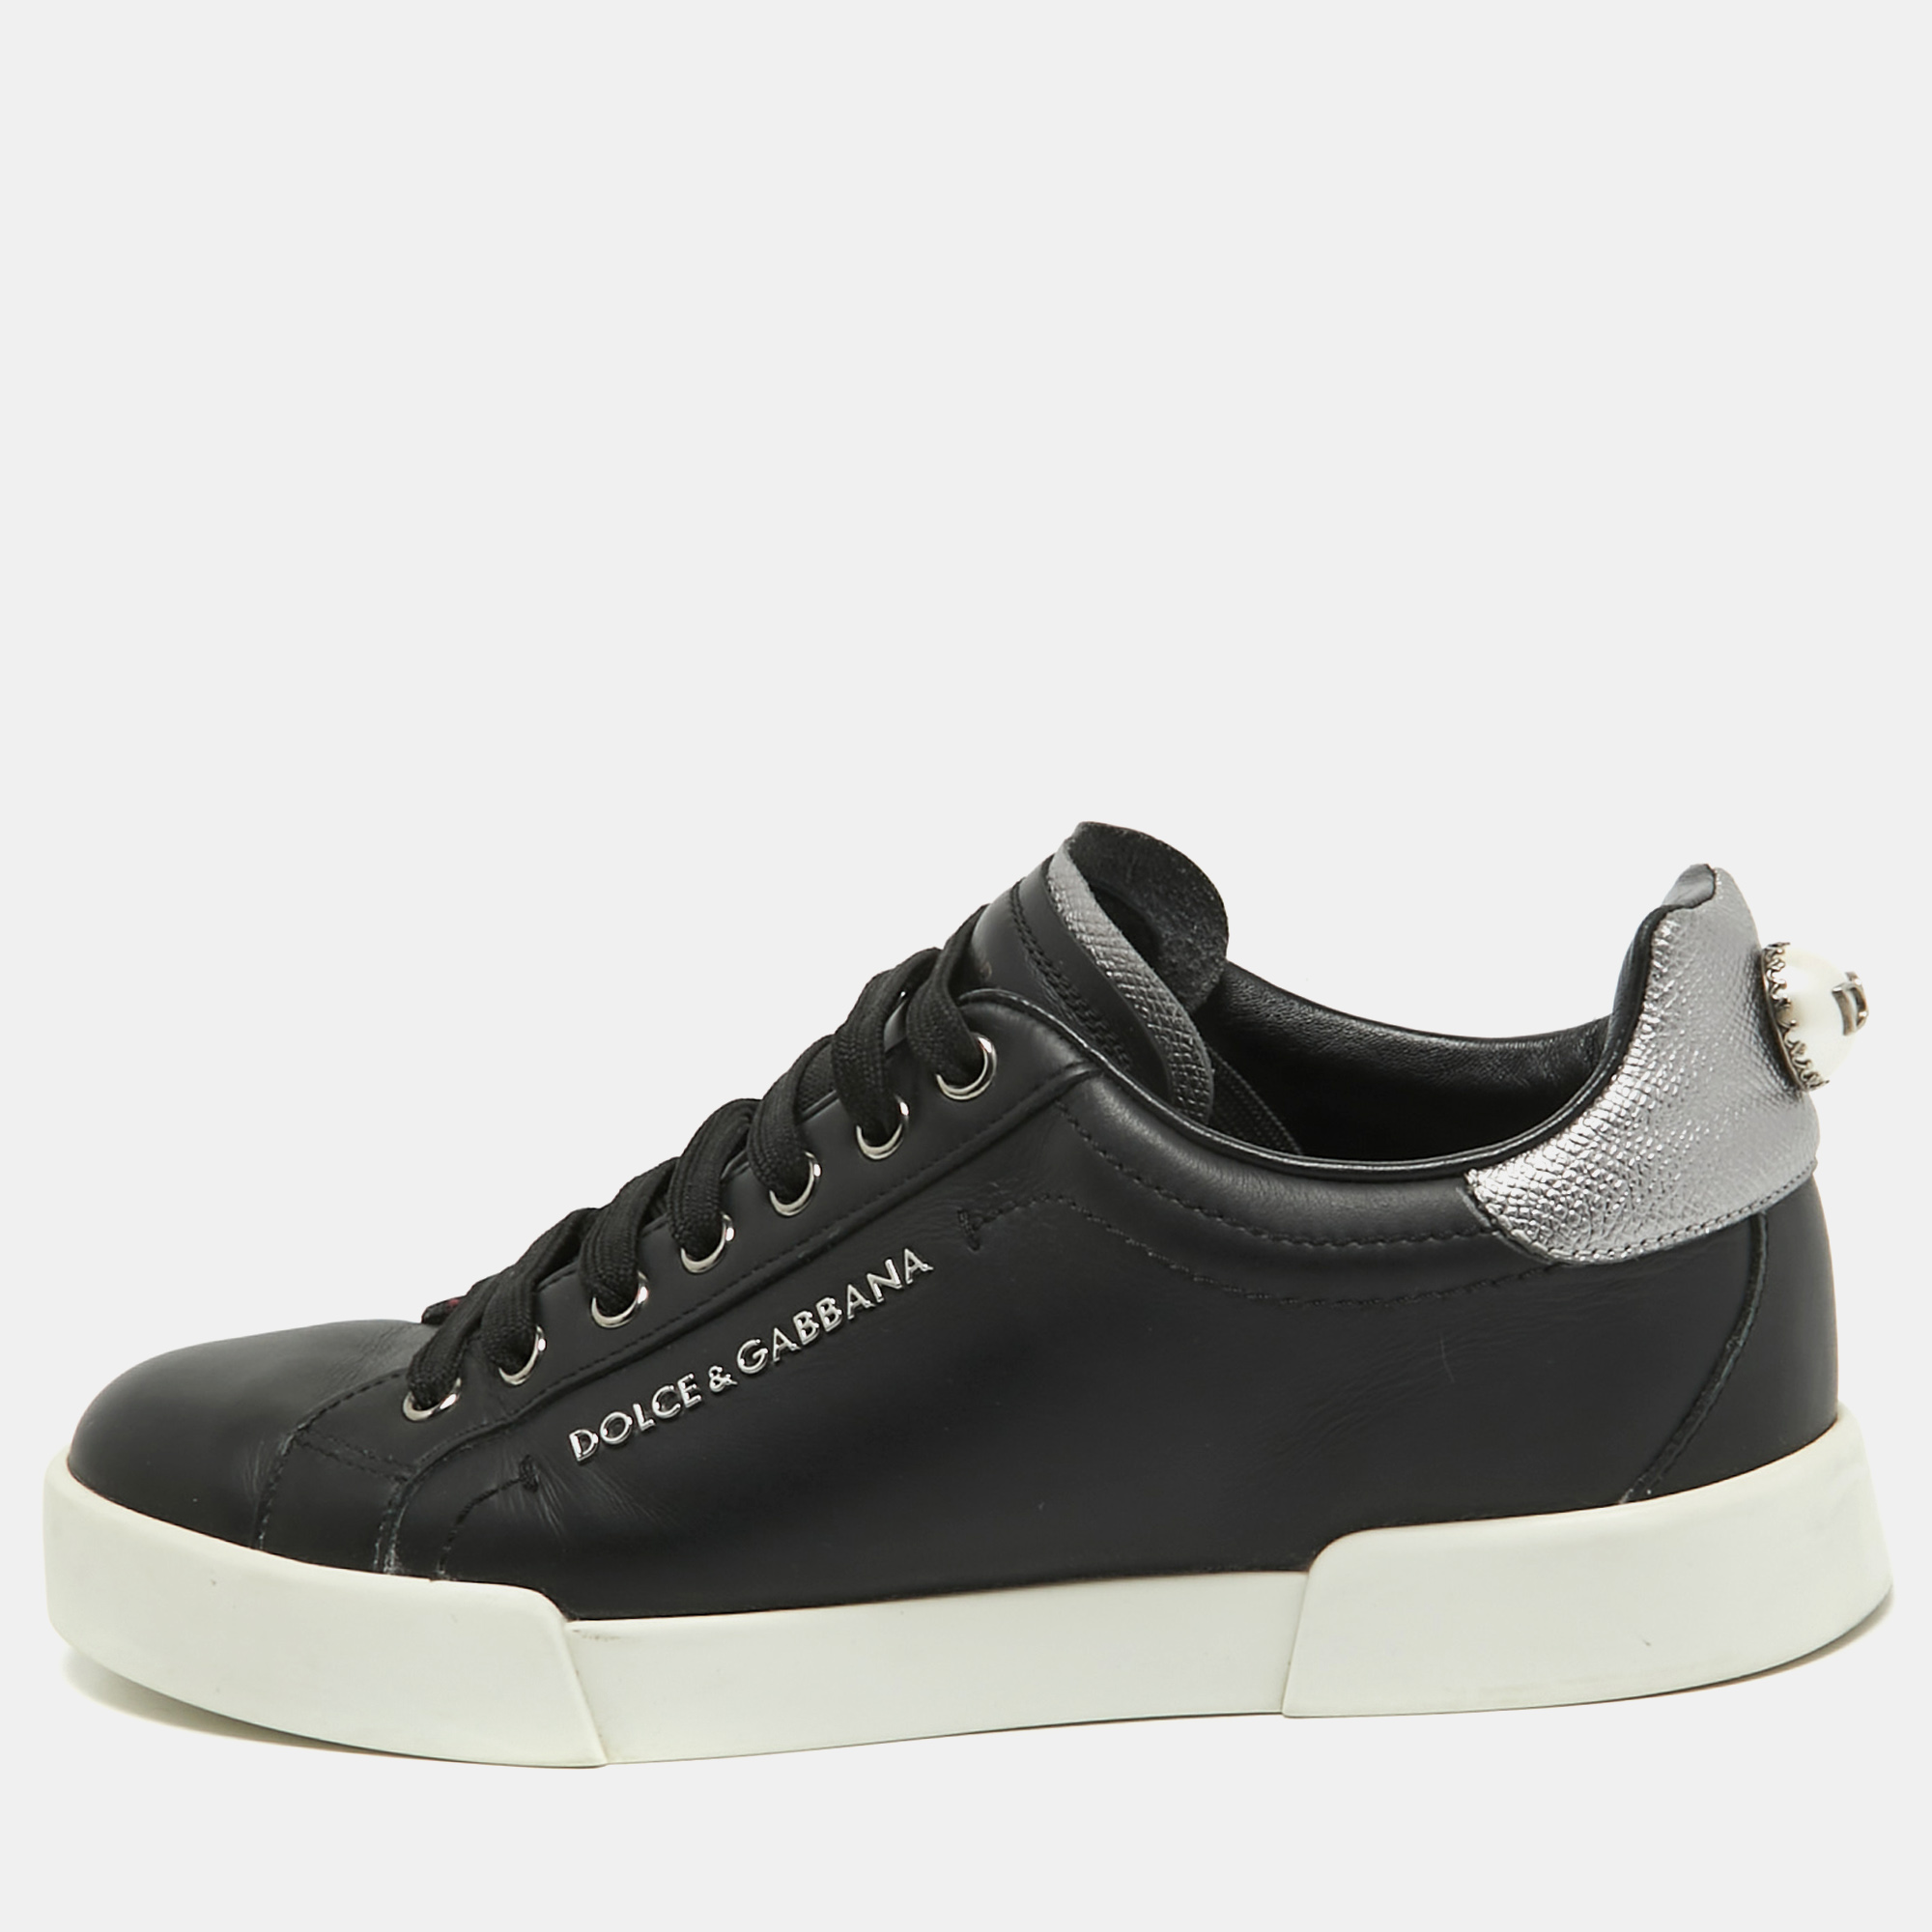 

Dolce & Gabbana Black Leather DG Pearl Portofino Sneakers Size